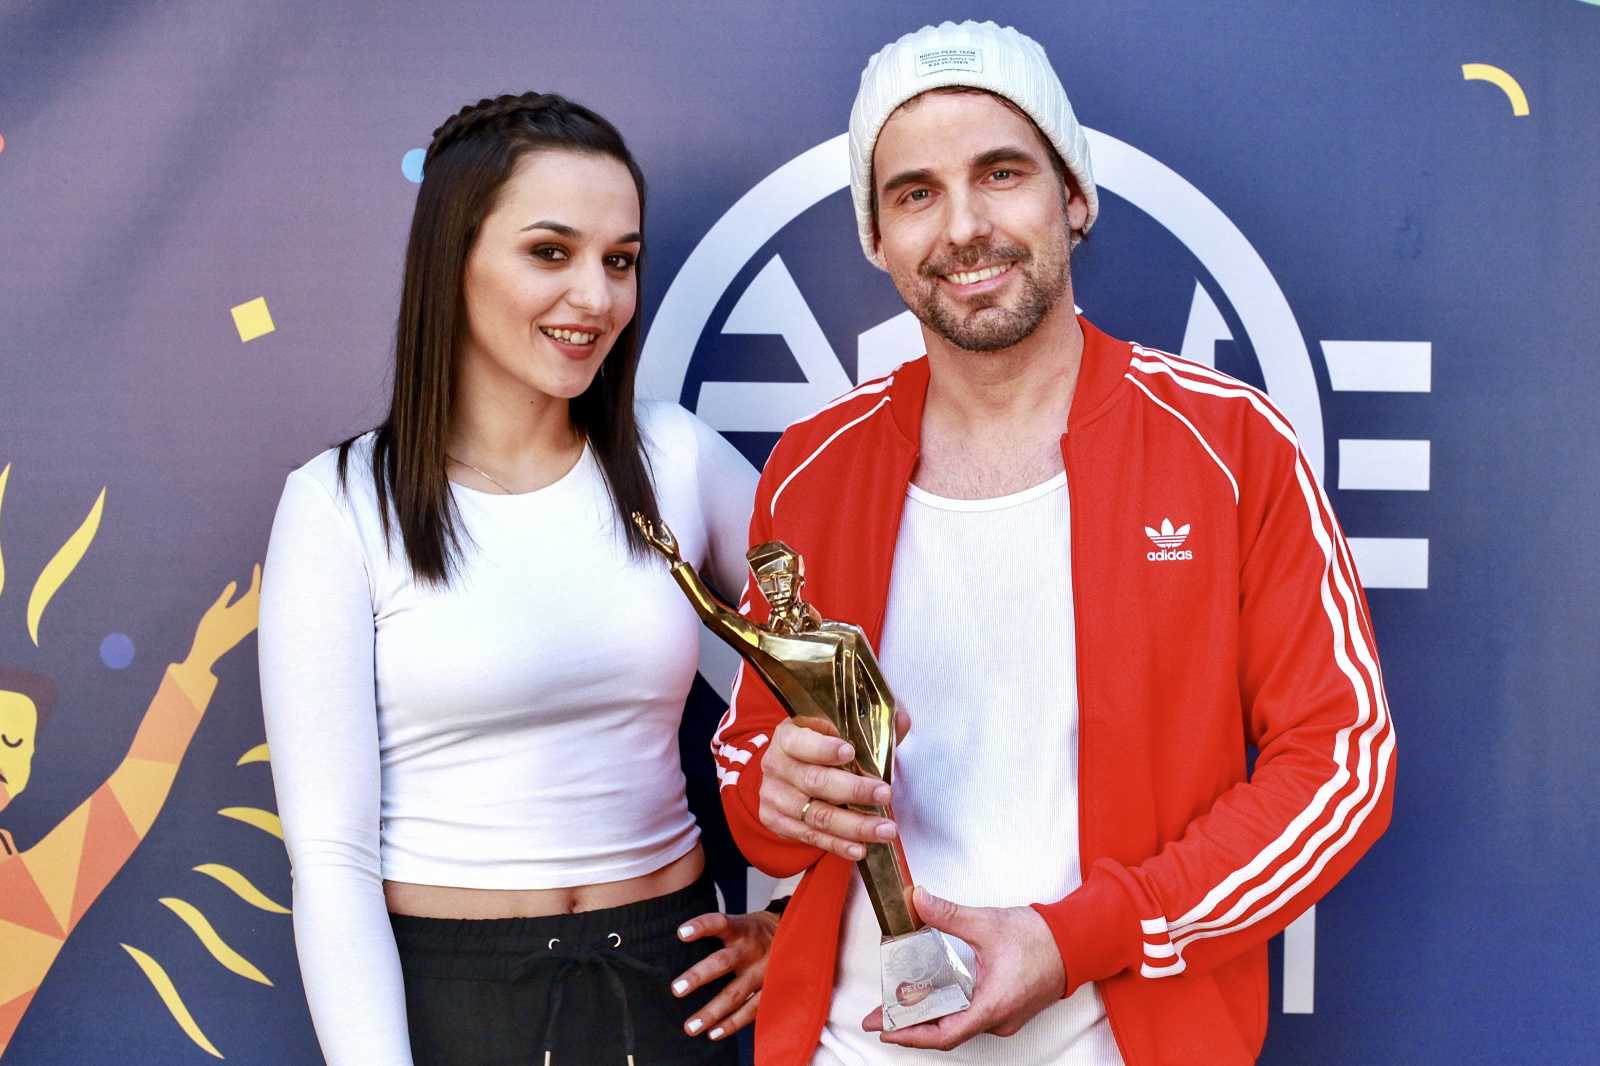 Az év dala kategória győztesei, Rácz Gergő és Orsovai Reni